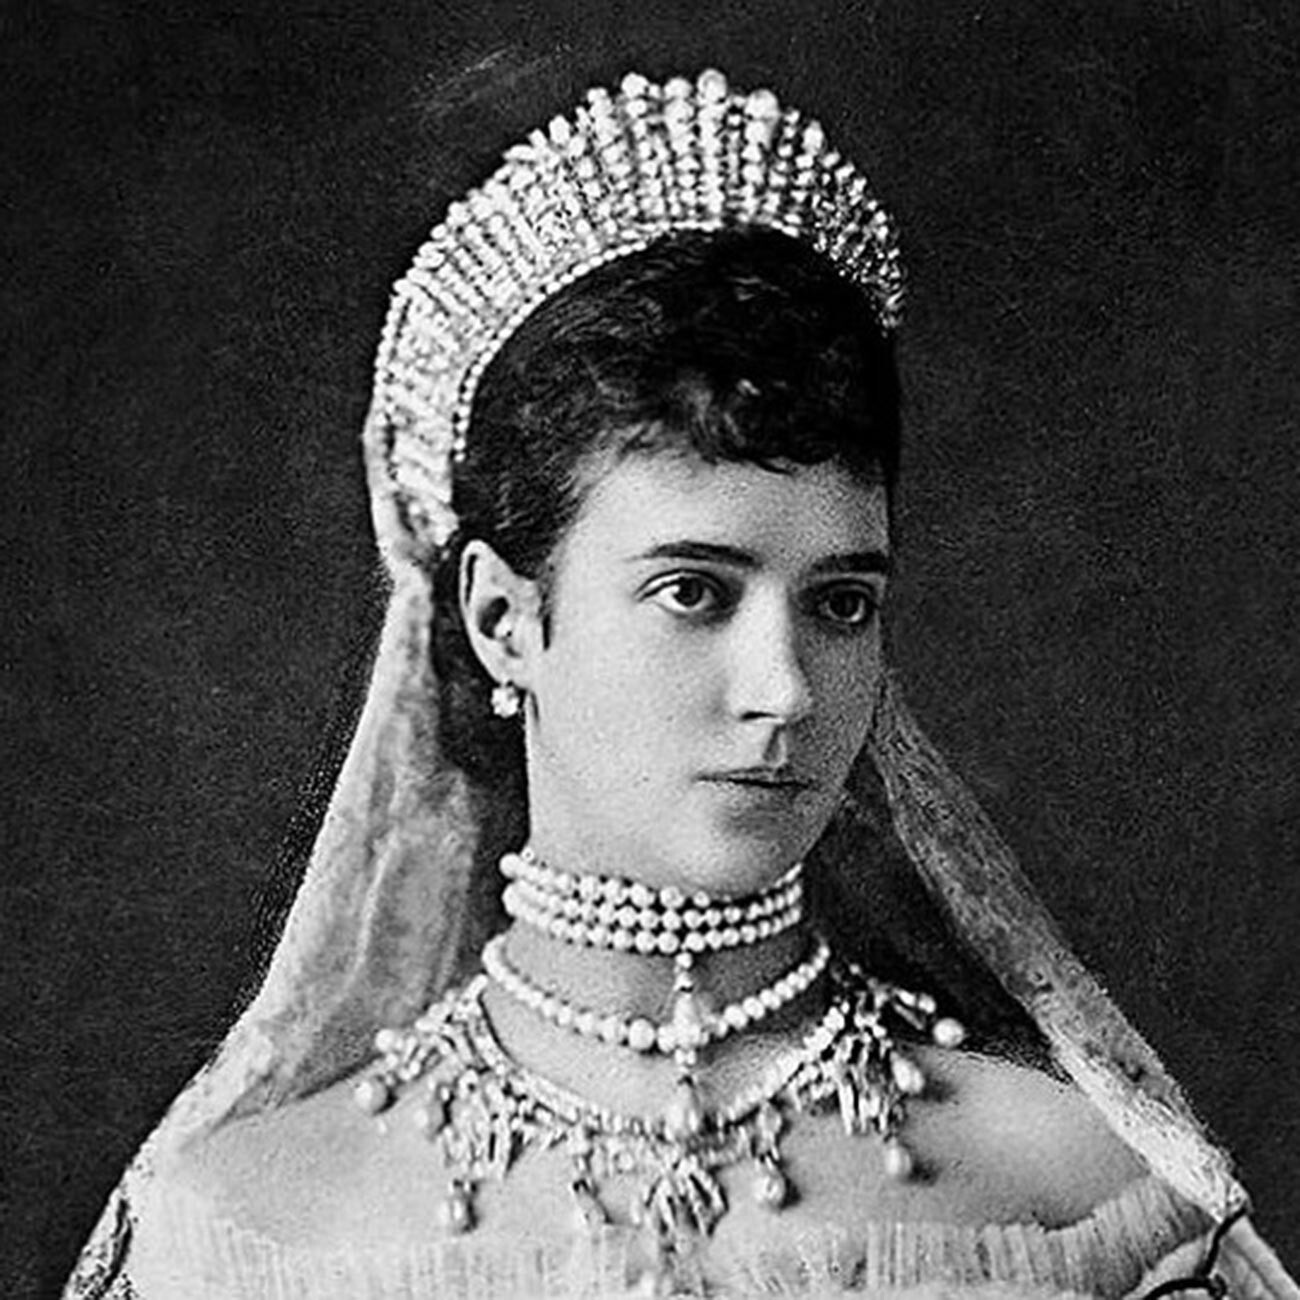 Maria Feodorovna di Russia (1847-1928), già principessa Dagmar di Danimarca, poi imperatrice consorte di Russia come moglie dell’imperatore Alessandro III, in una foto degli anni Ottanta dell’Ottocento 
